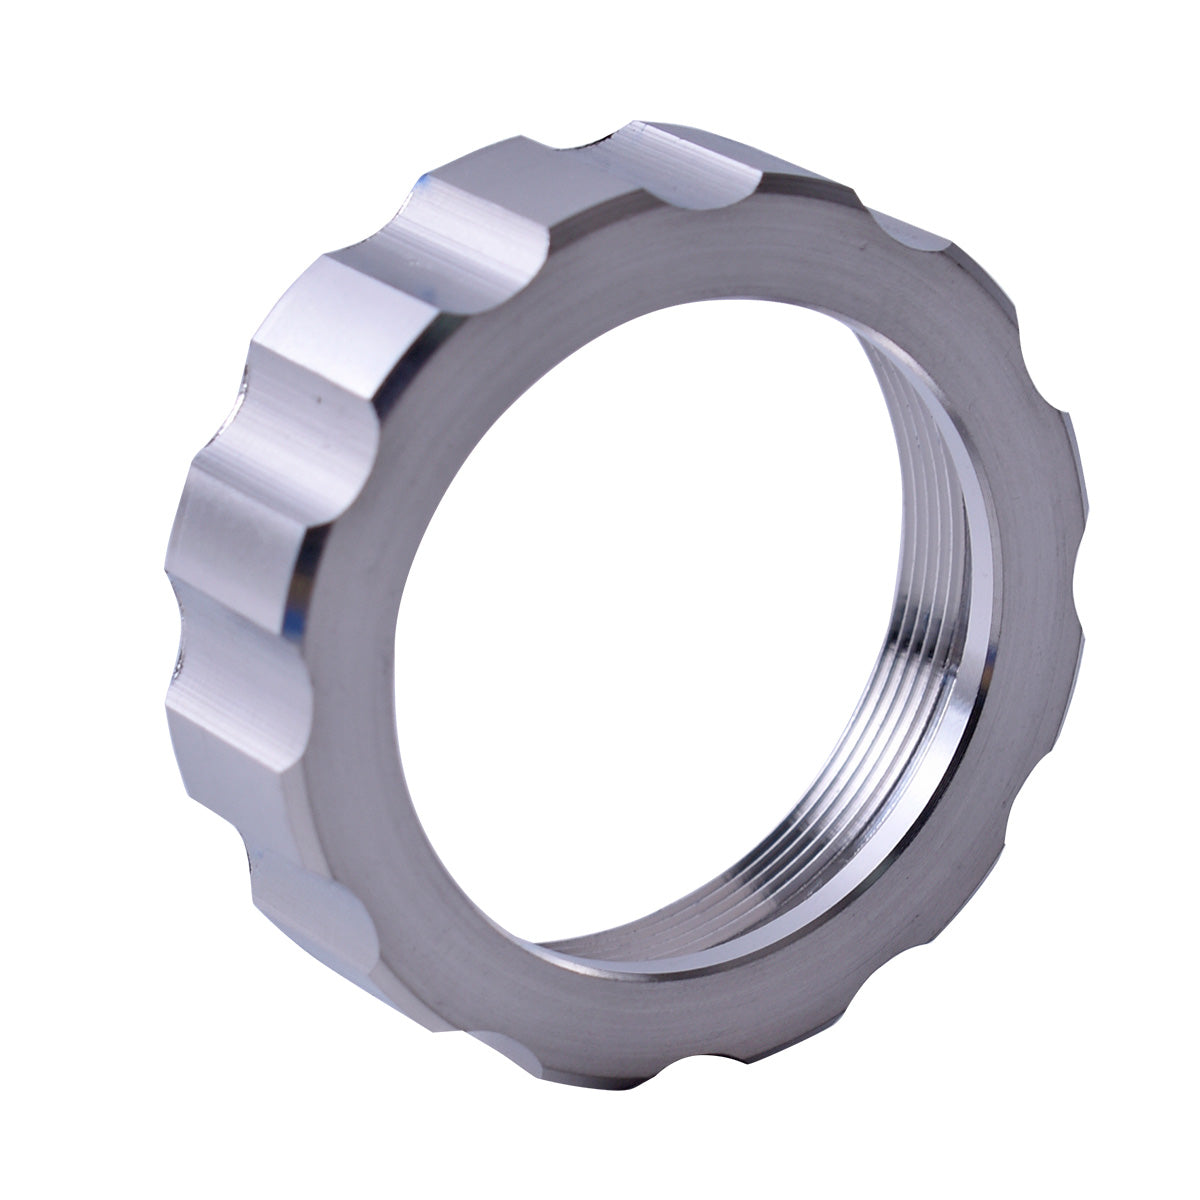 Startnow Laser Locking Ring Raytools BT240S Ceramic Lock Ring Fasten Nut